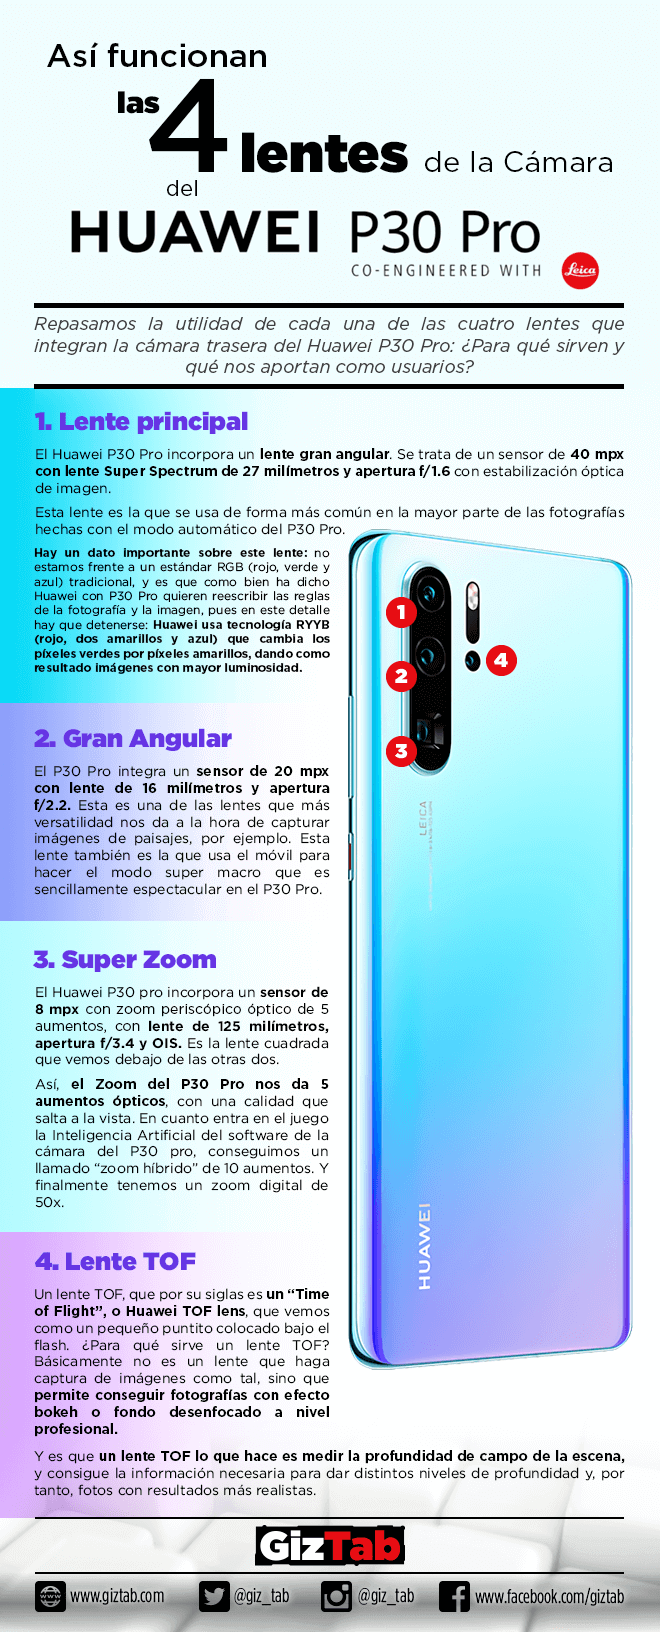 Infografía sobre el funcionamiento de las cuatro lentes del Huawei P30 PRO